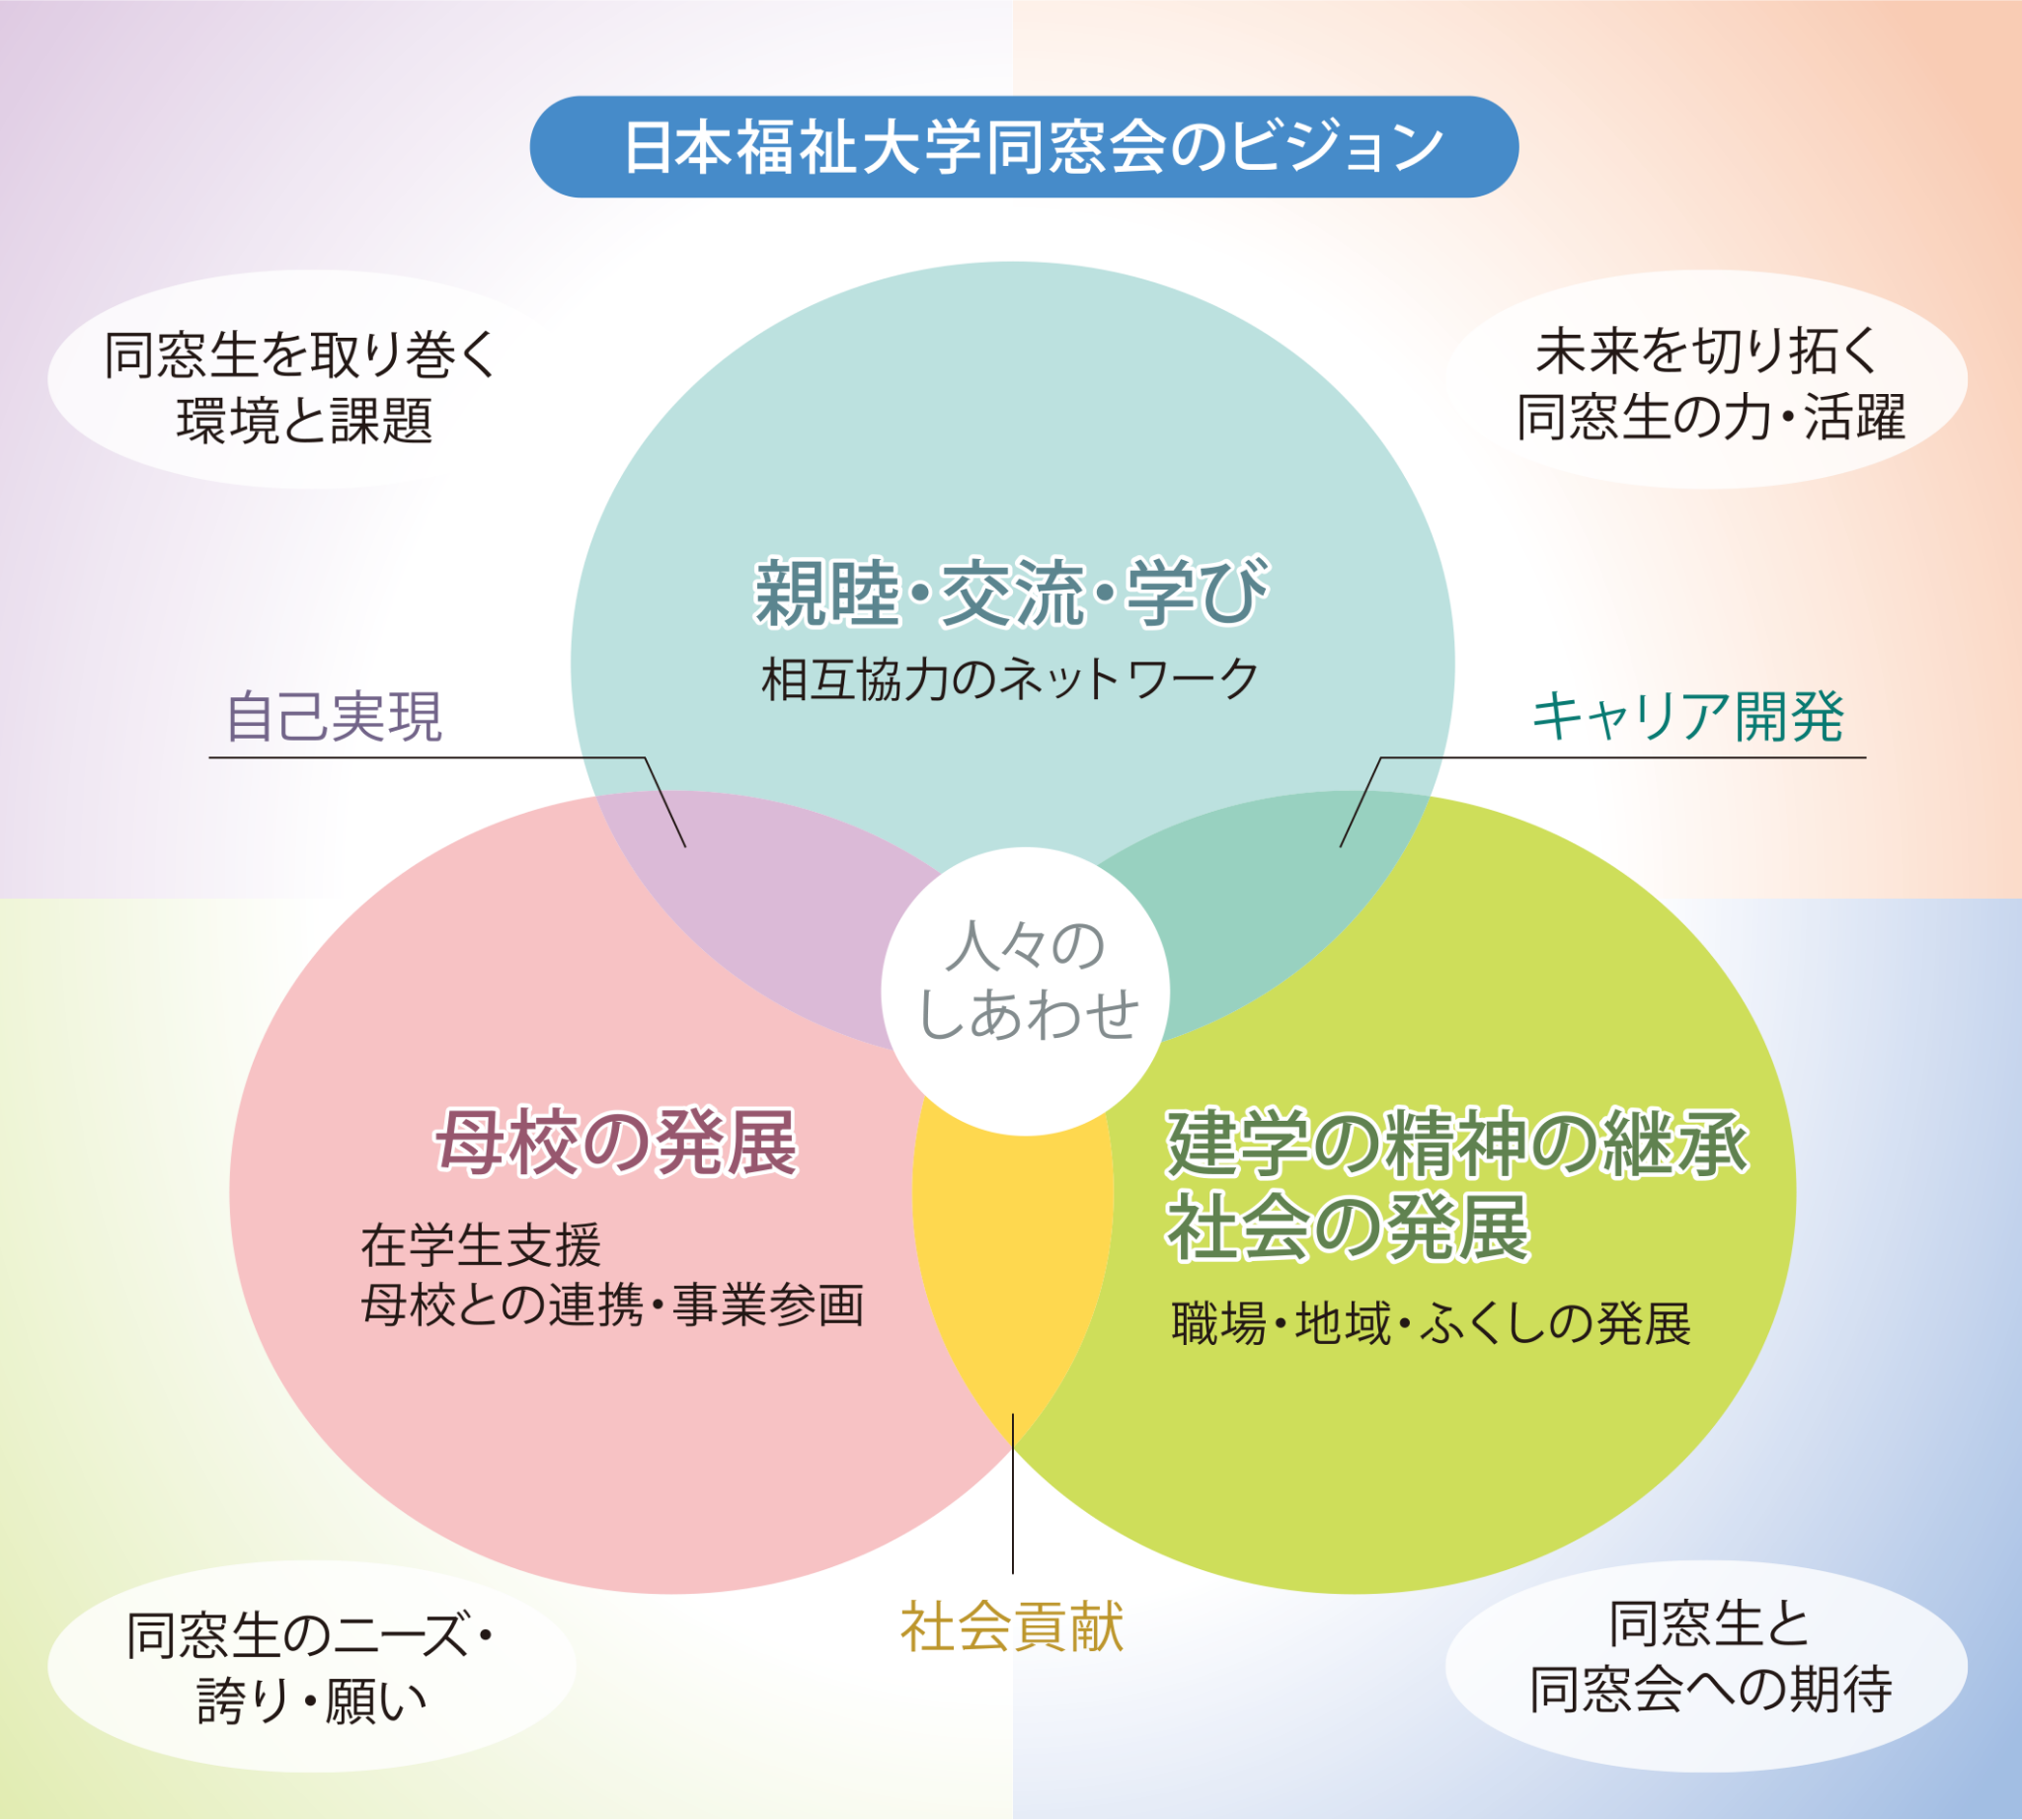 日本福祉大学同窓会のミッションとビジョン